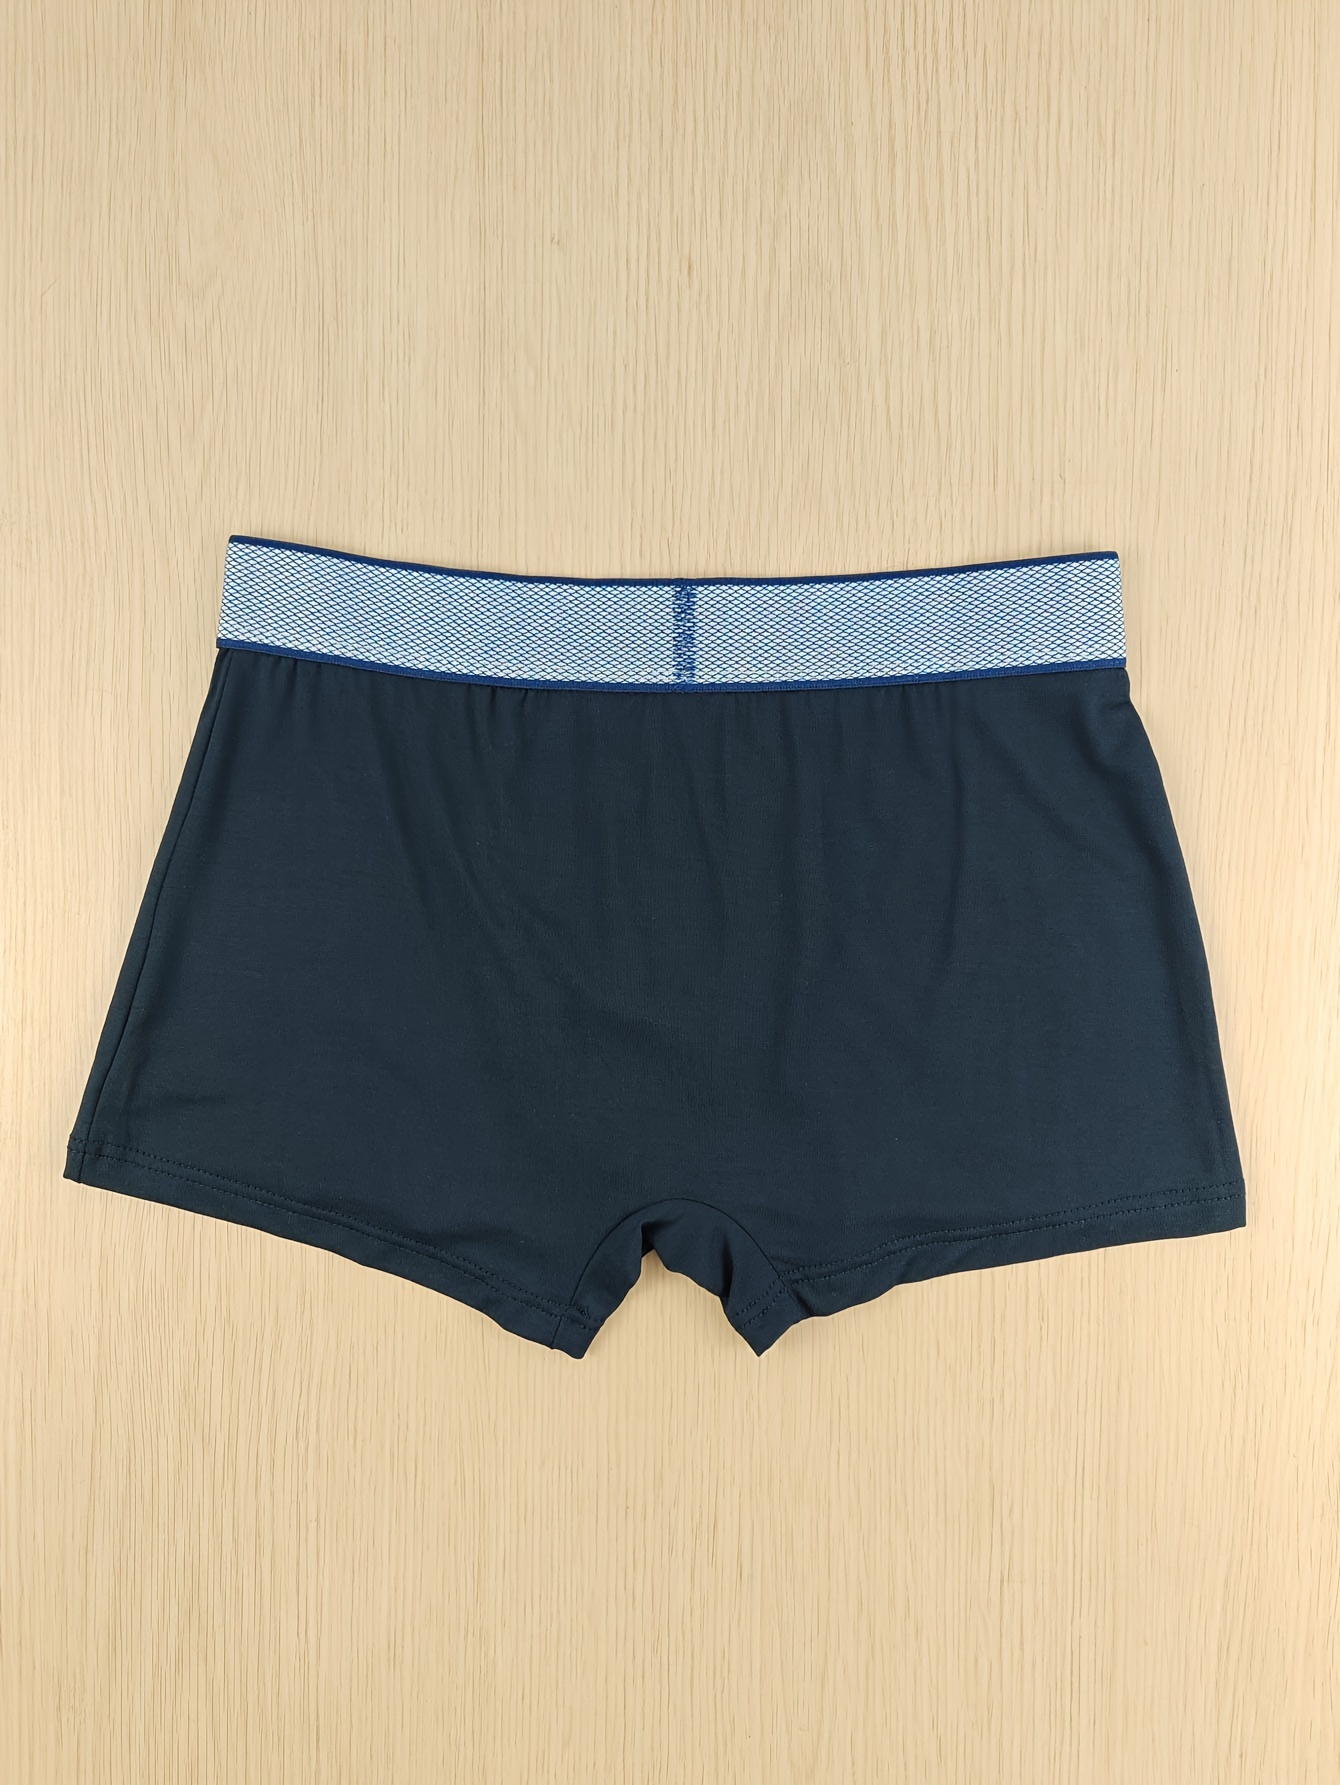 Unisex Trunk Kids Cotton Plain Underwear, Size: Medium at best